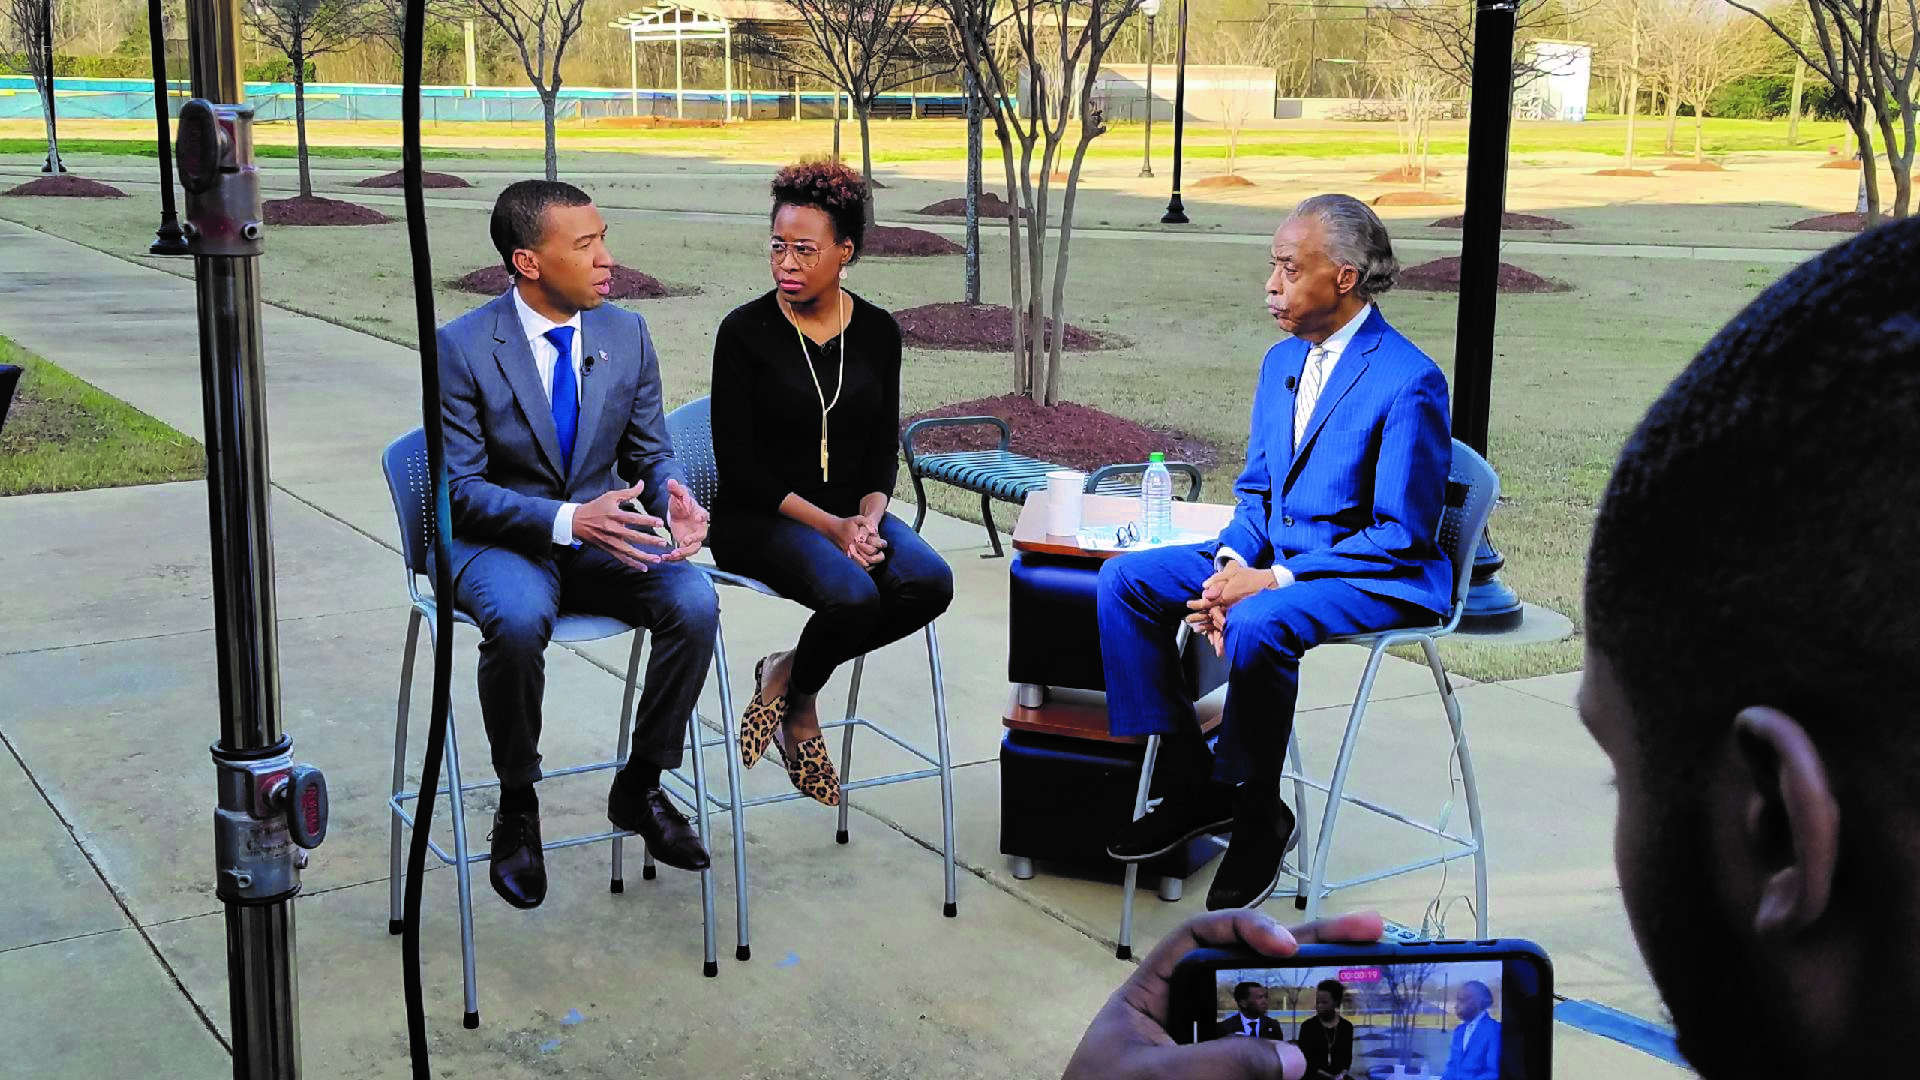 Noticias con perspectiva de género. La editora jefe del 19th’s, Errin Haines, hace una aparición en televisión en Selma, Alabama el 7 de marzo de 2020, en el aniversario del Domingo Sangriento, para hablar de las primarias del supermartes.